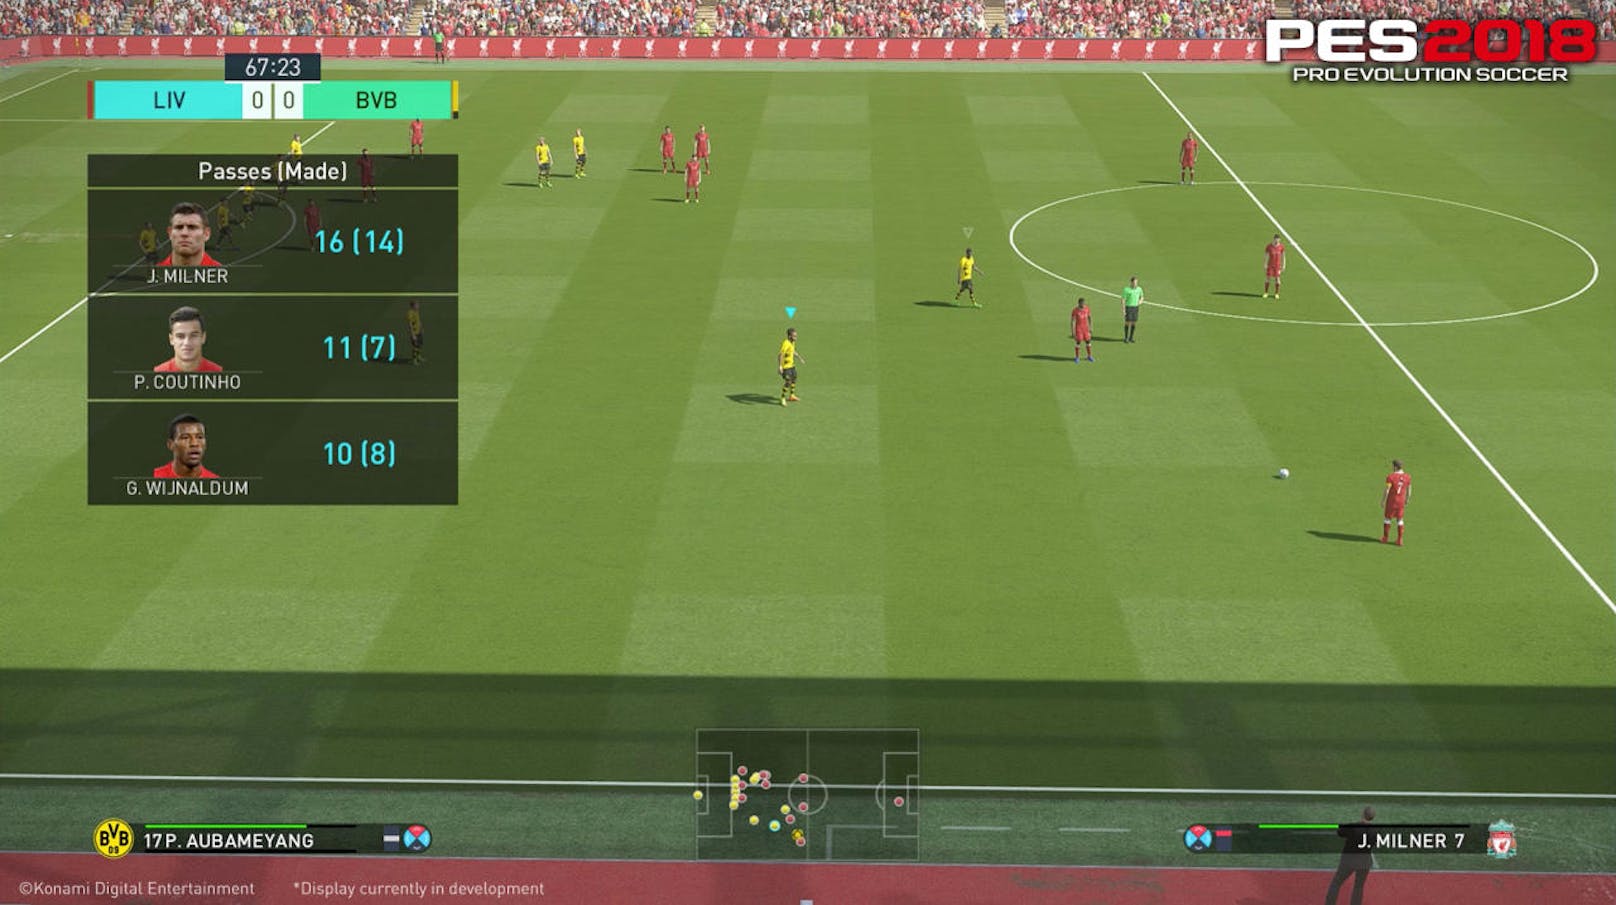 Taktik-Schnelleinstellungen können jetzt während des Spiels gemacht werden.